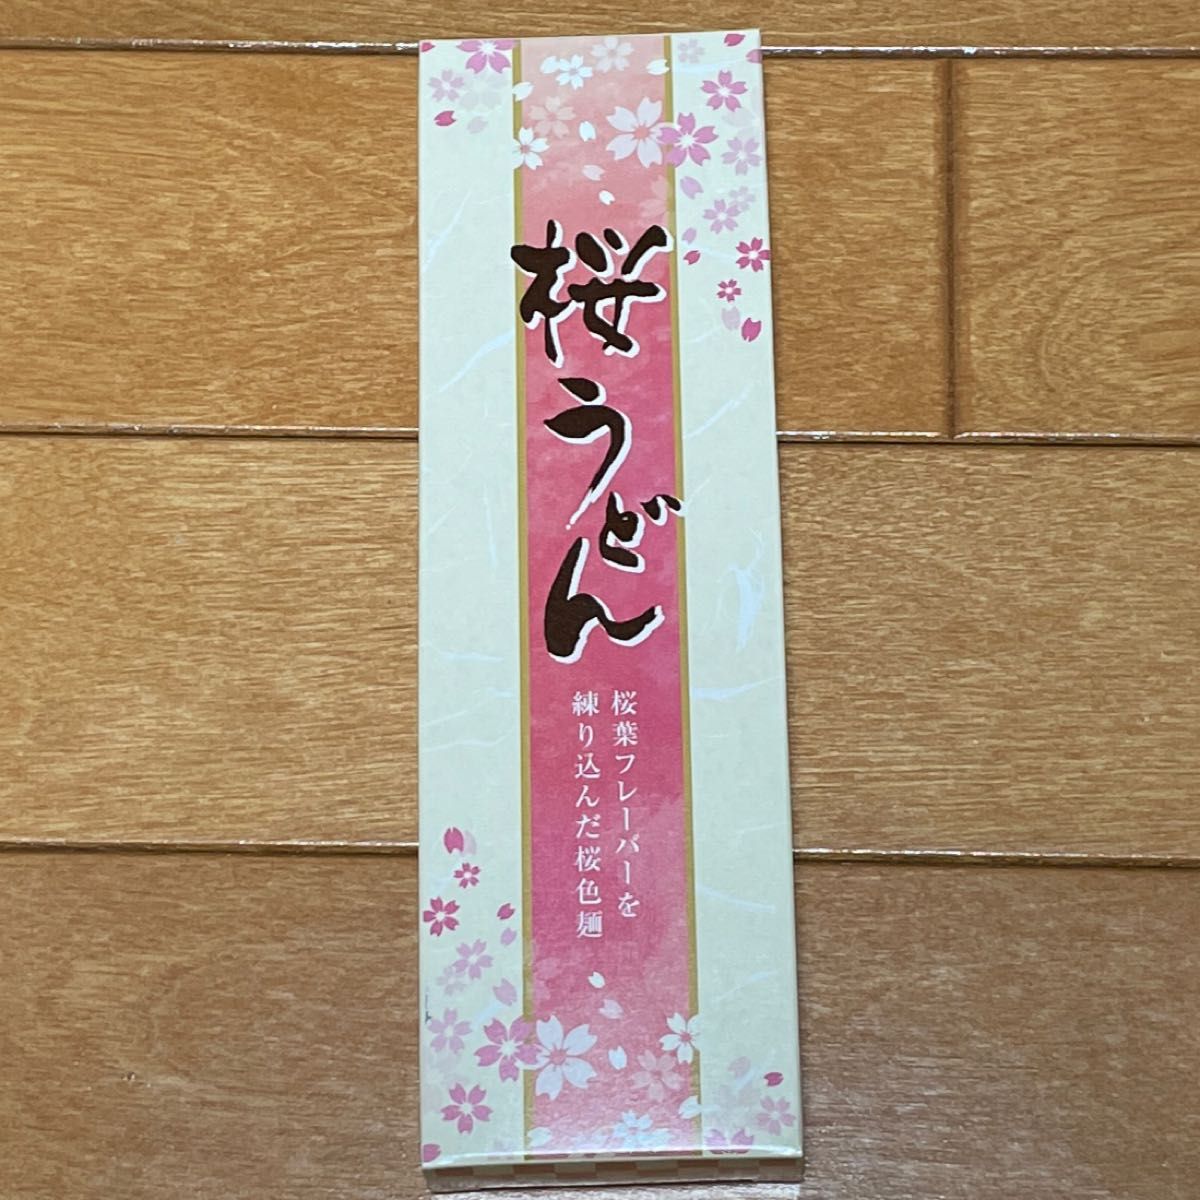 桜うどん(乾麺)、桜入浴剤、桜石鹸